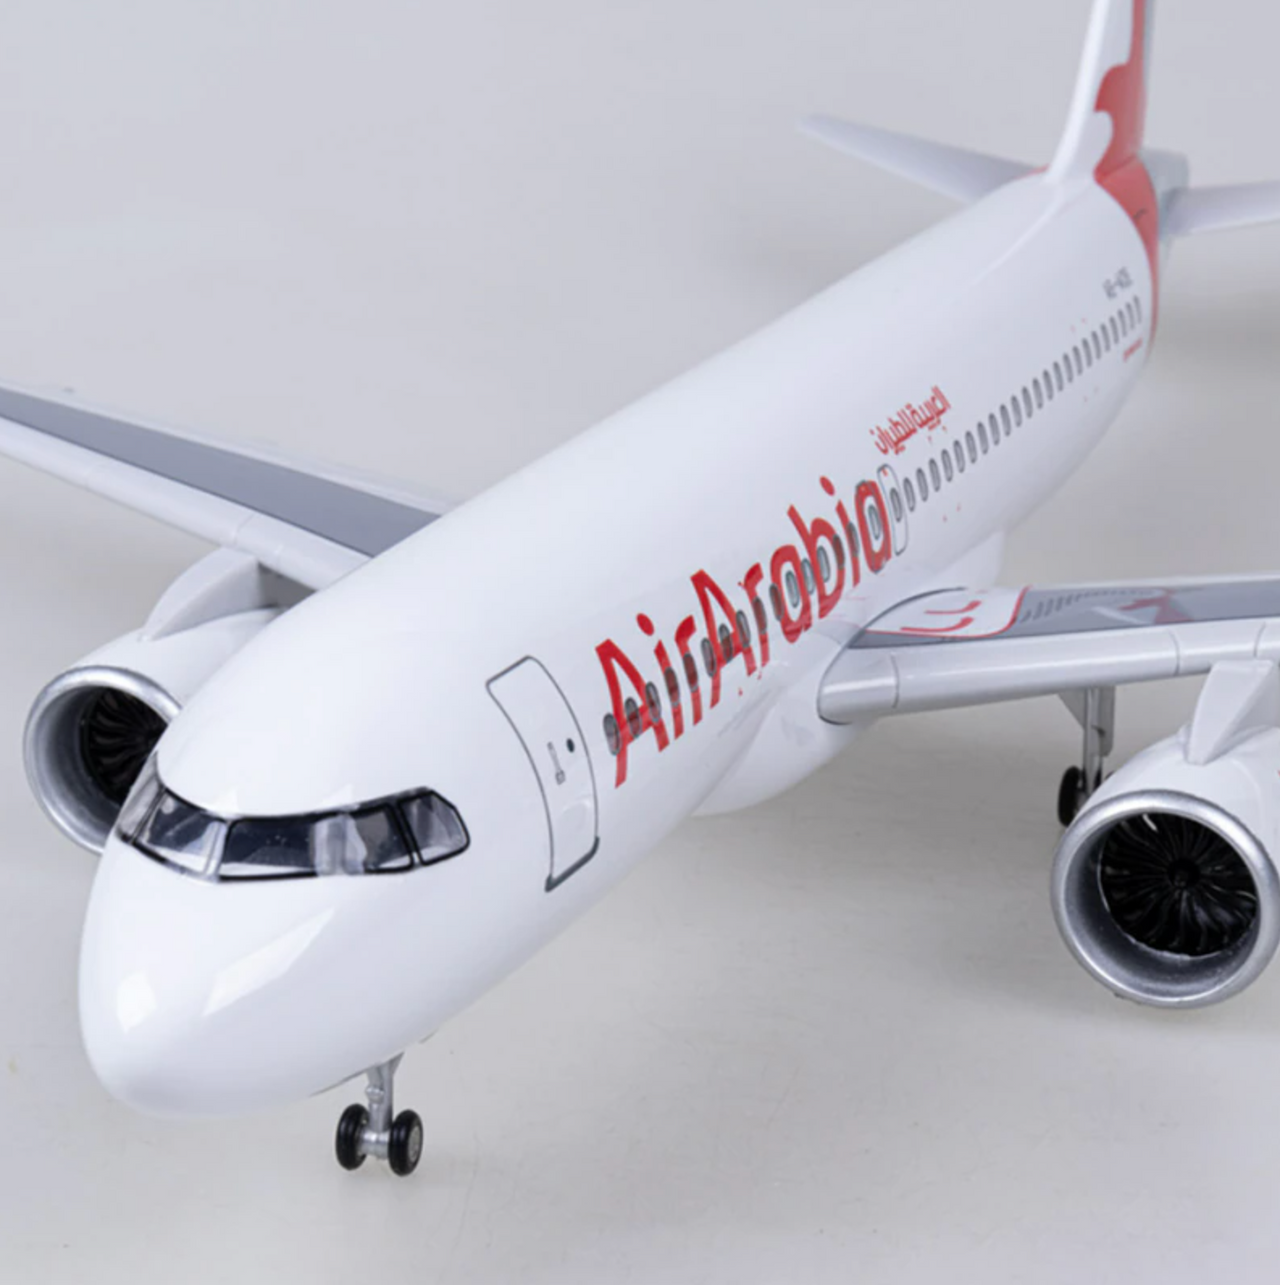 Air Arabia Airbus A320Neo Airplane Model (47CM)